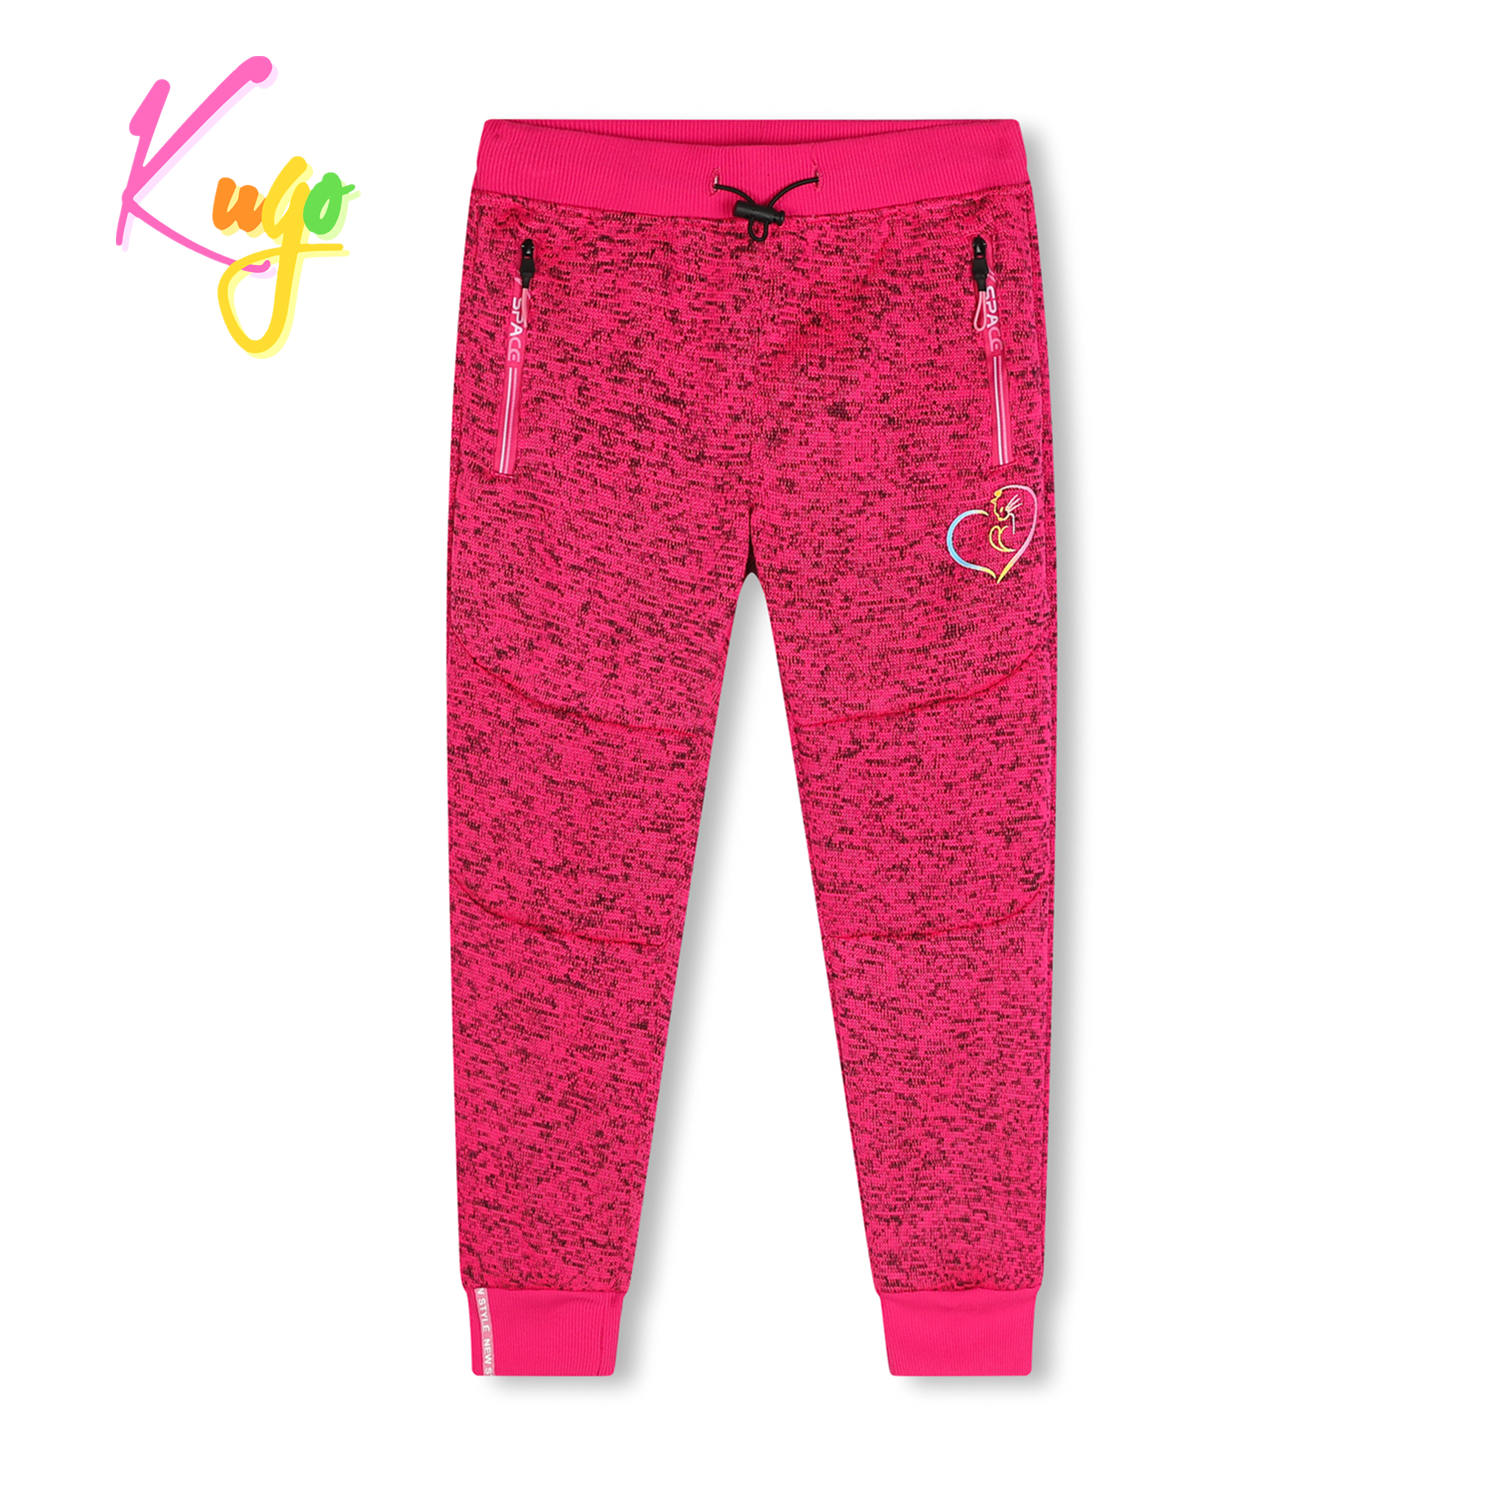 Dívčí outdoorové tepláky - KUGO HT1925, růžová Barva: Růžová, Velikost: 128